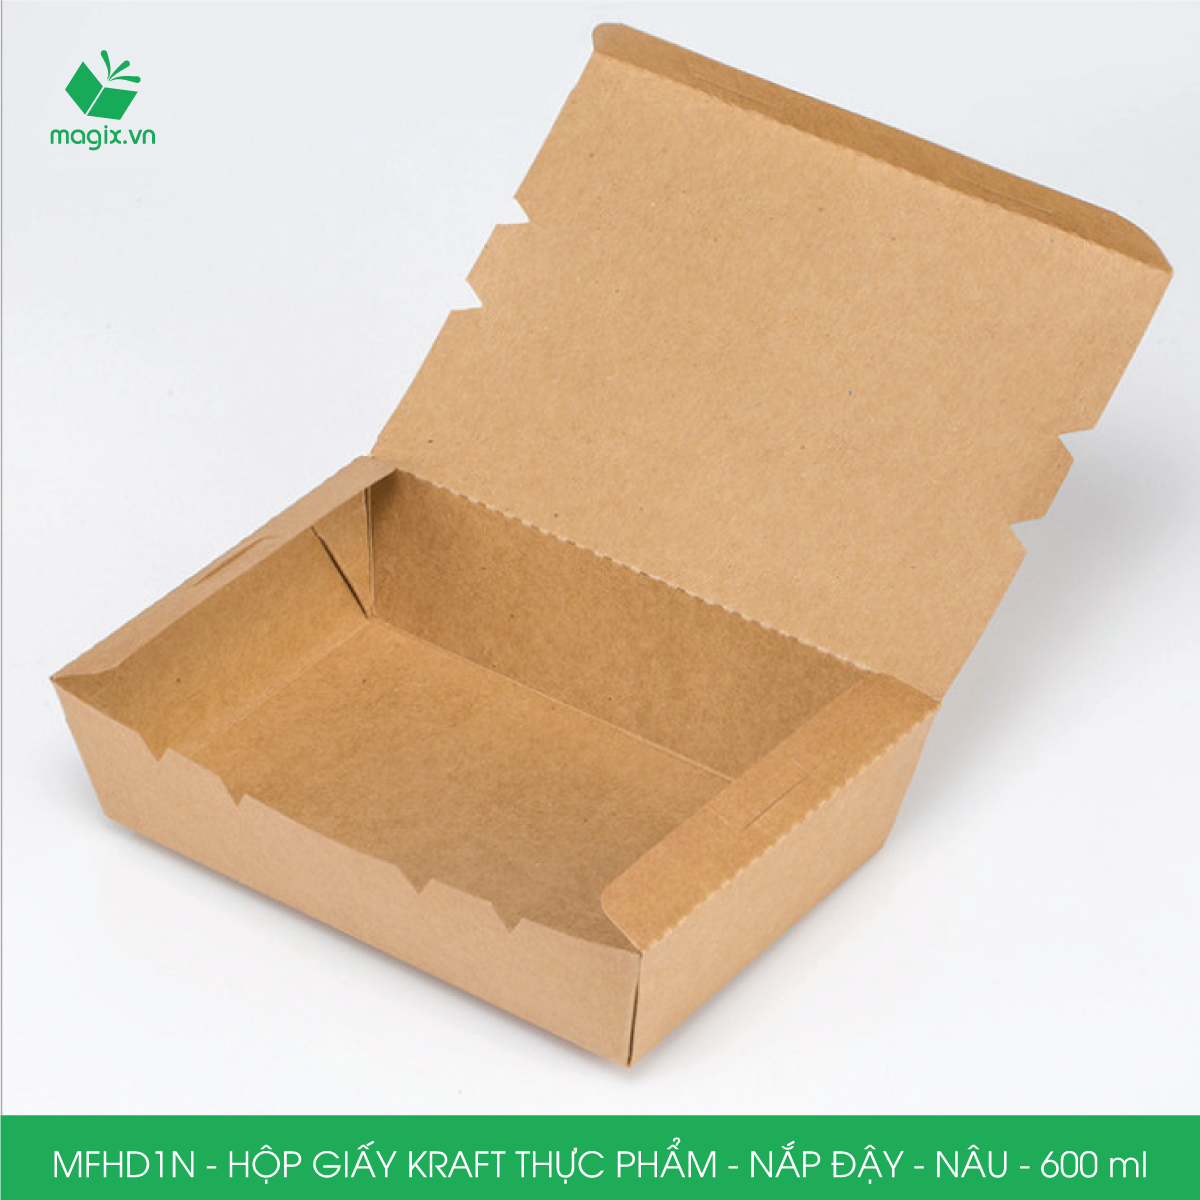 MFHD1N - Combo 100 hộp giấy kraft thực phẩm 600ml, hộp đựng thức ăn nắp đậy màu nâu, hộp gói đồ ăn mang đi